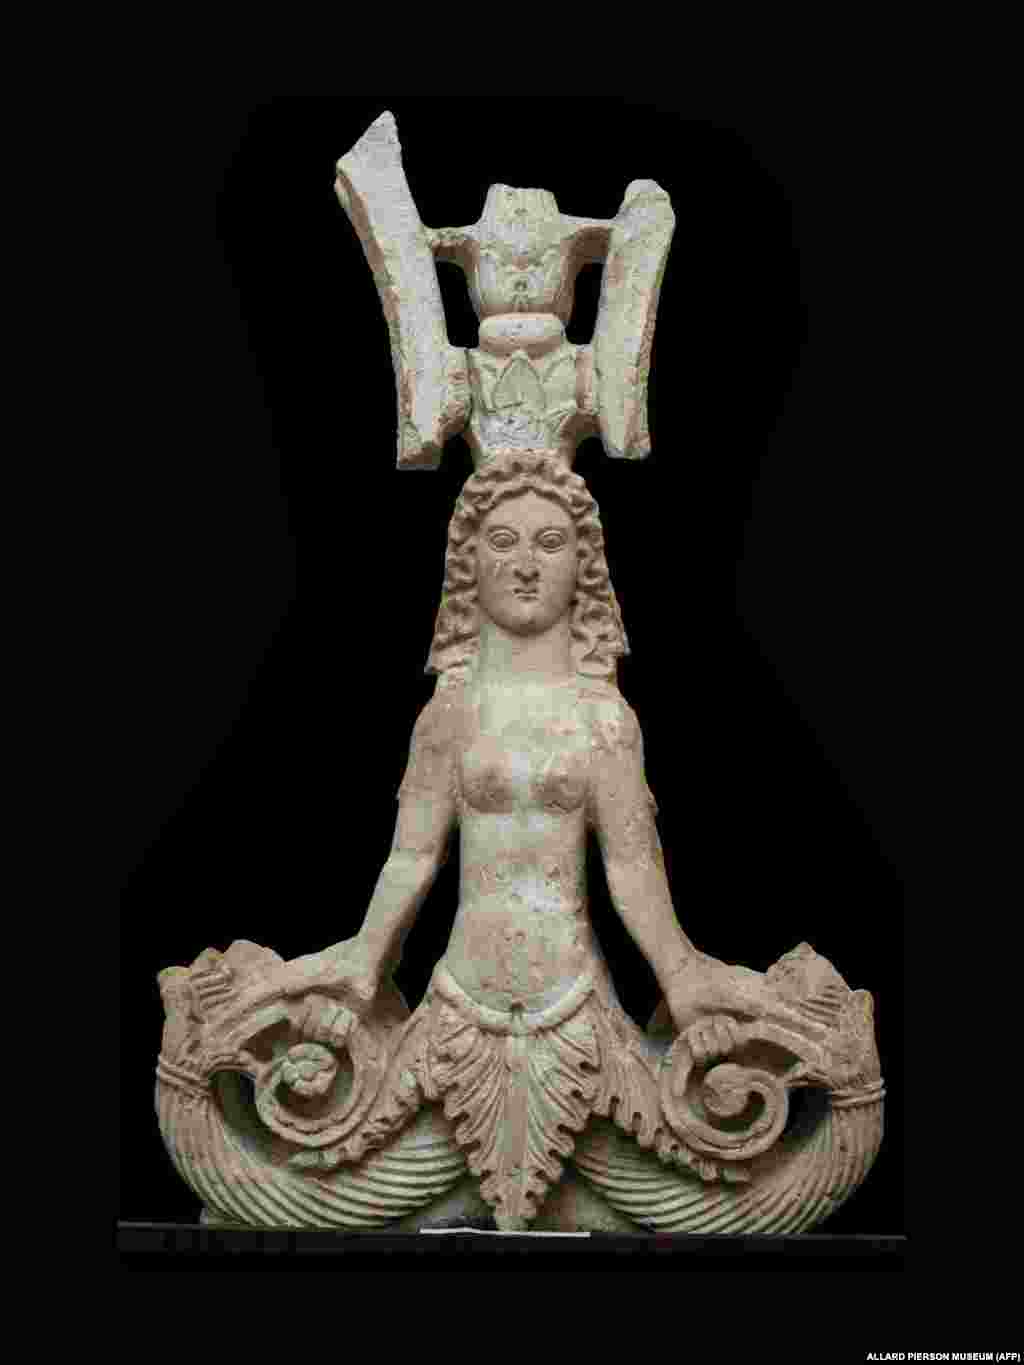 Фігура морського чудовиська з двома хвостами I&ndash;II ст. н.е. Її знайшли на розкопках грецької колонії Пантікапей на східному березі Криму